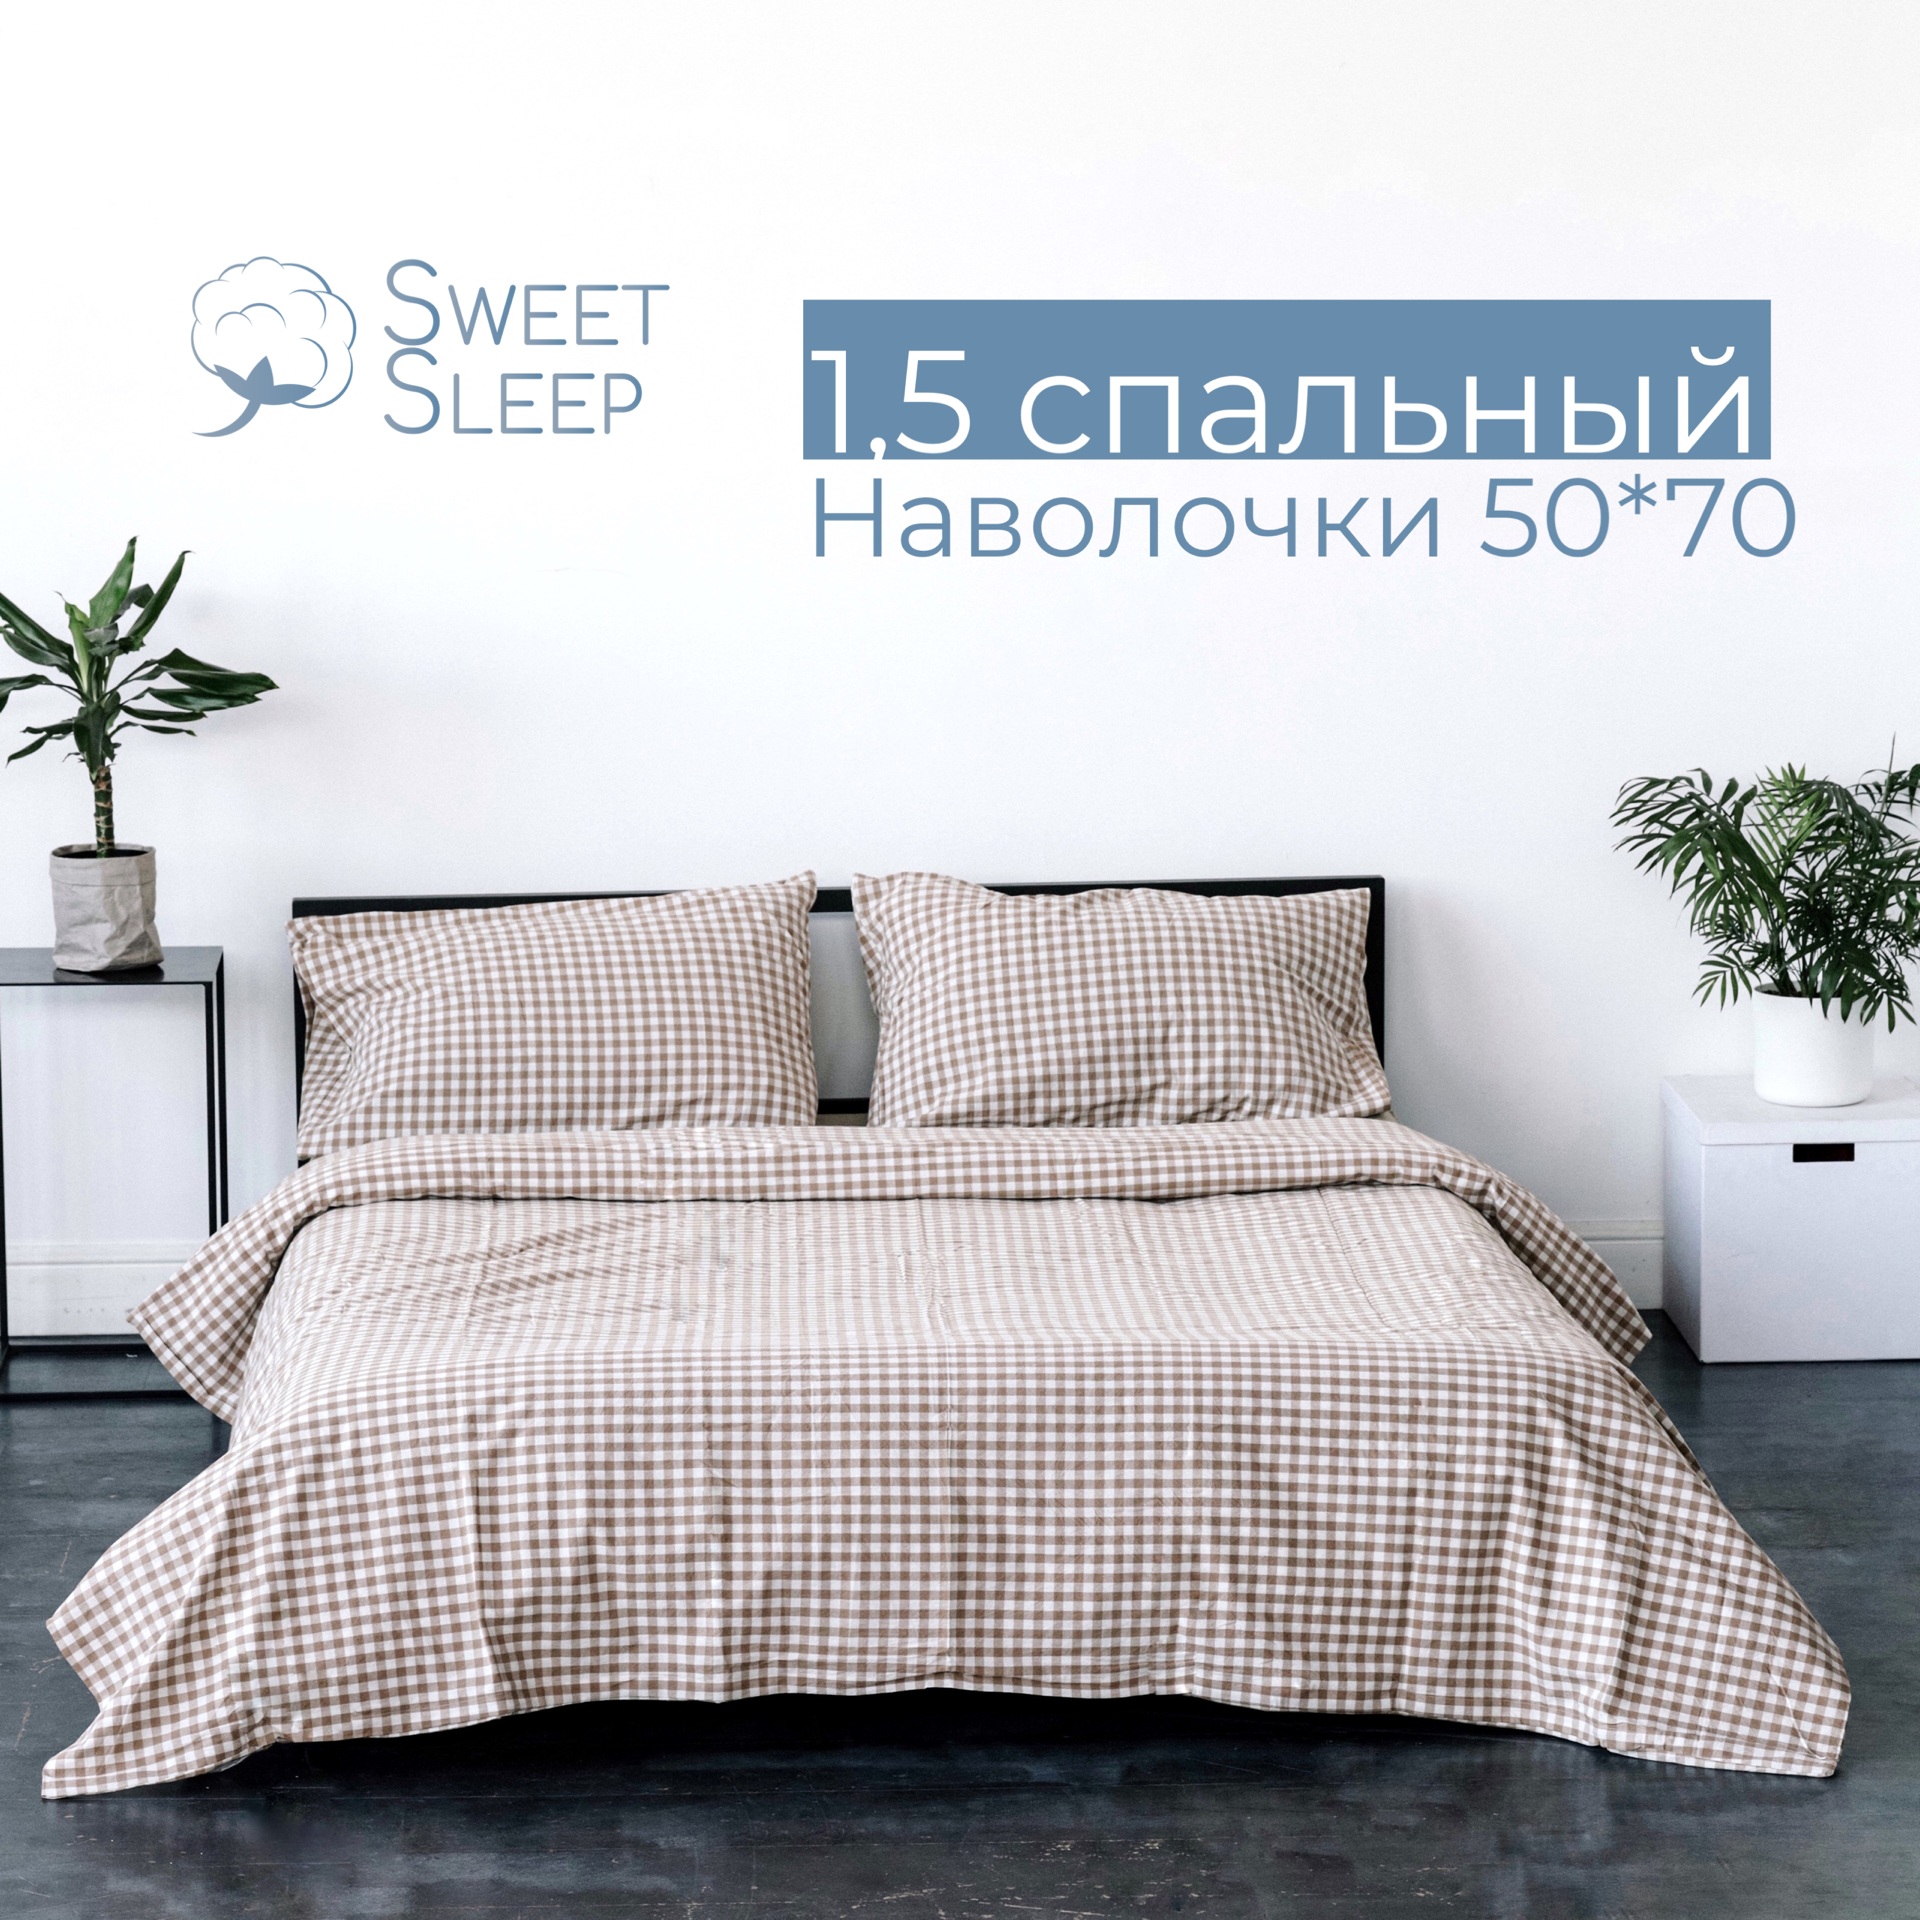 Комплект постельного белья Sweet Sleep 1.5 спальный вареный хлопок, бежевая/белая клетка - фотография № 1